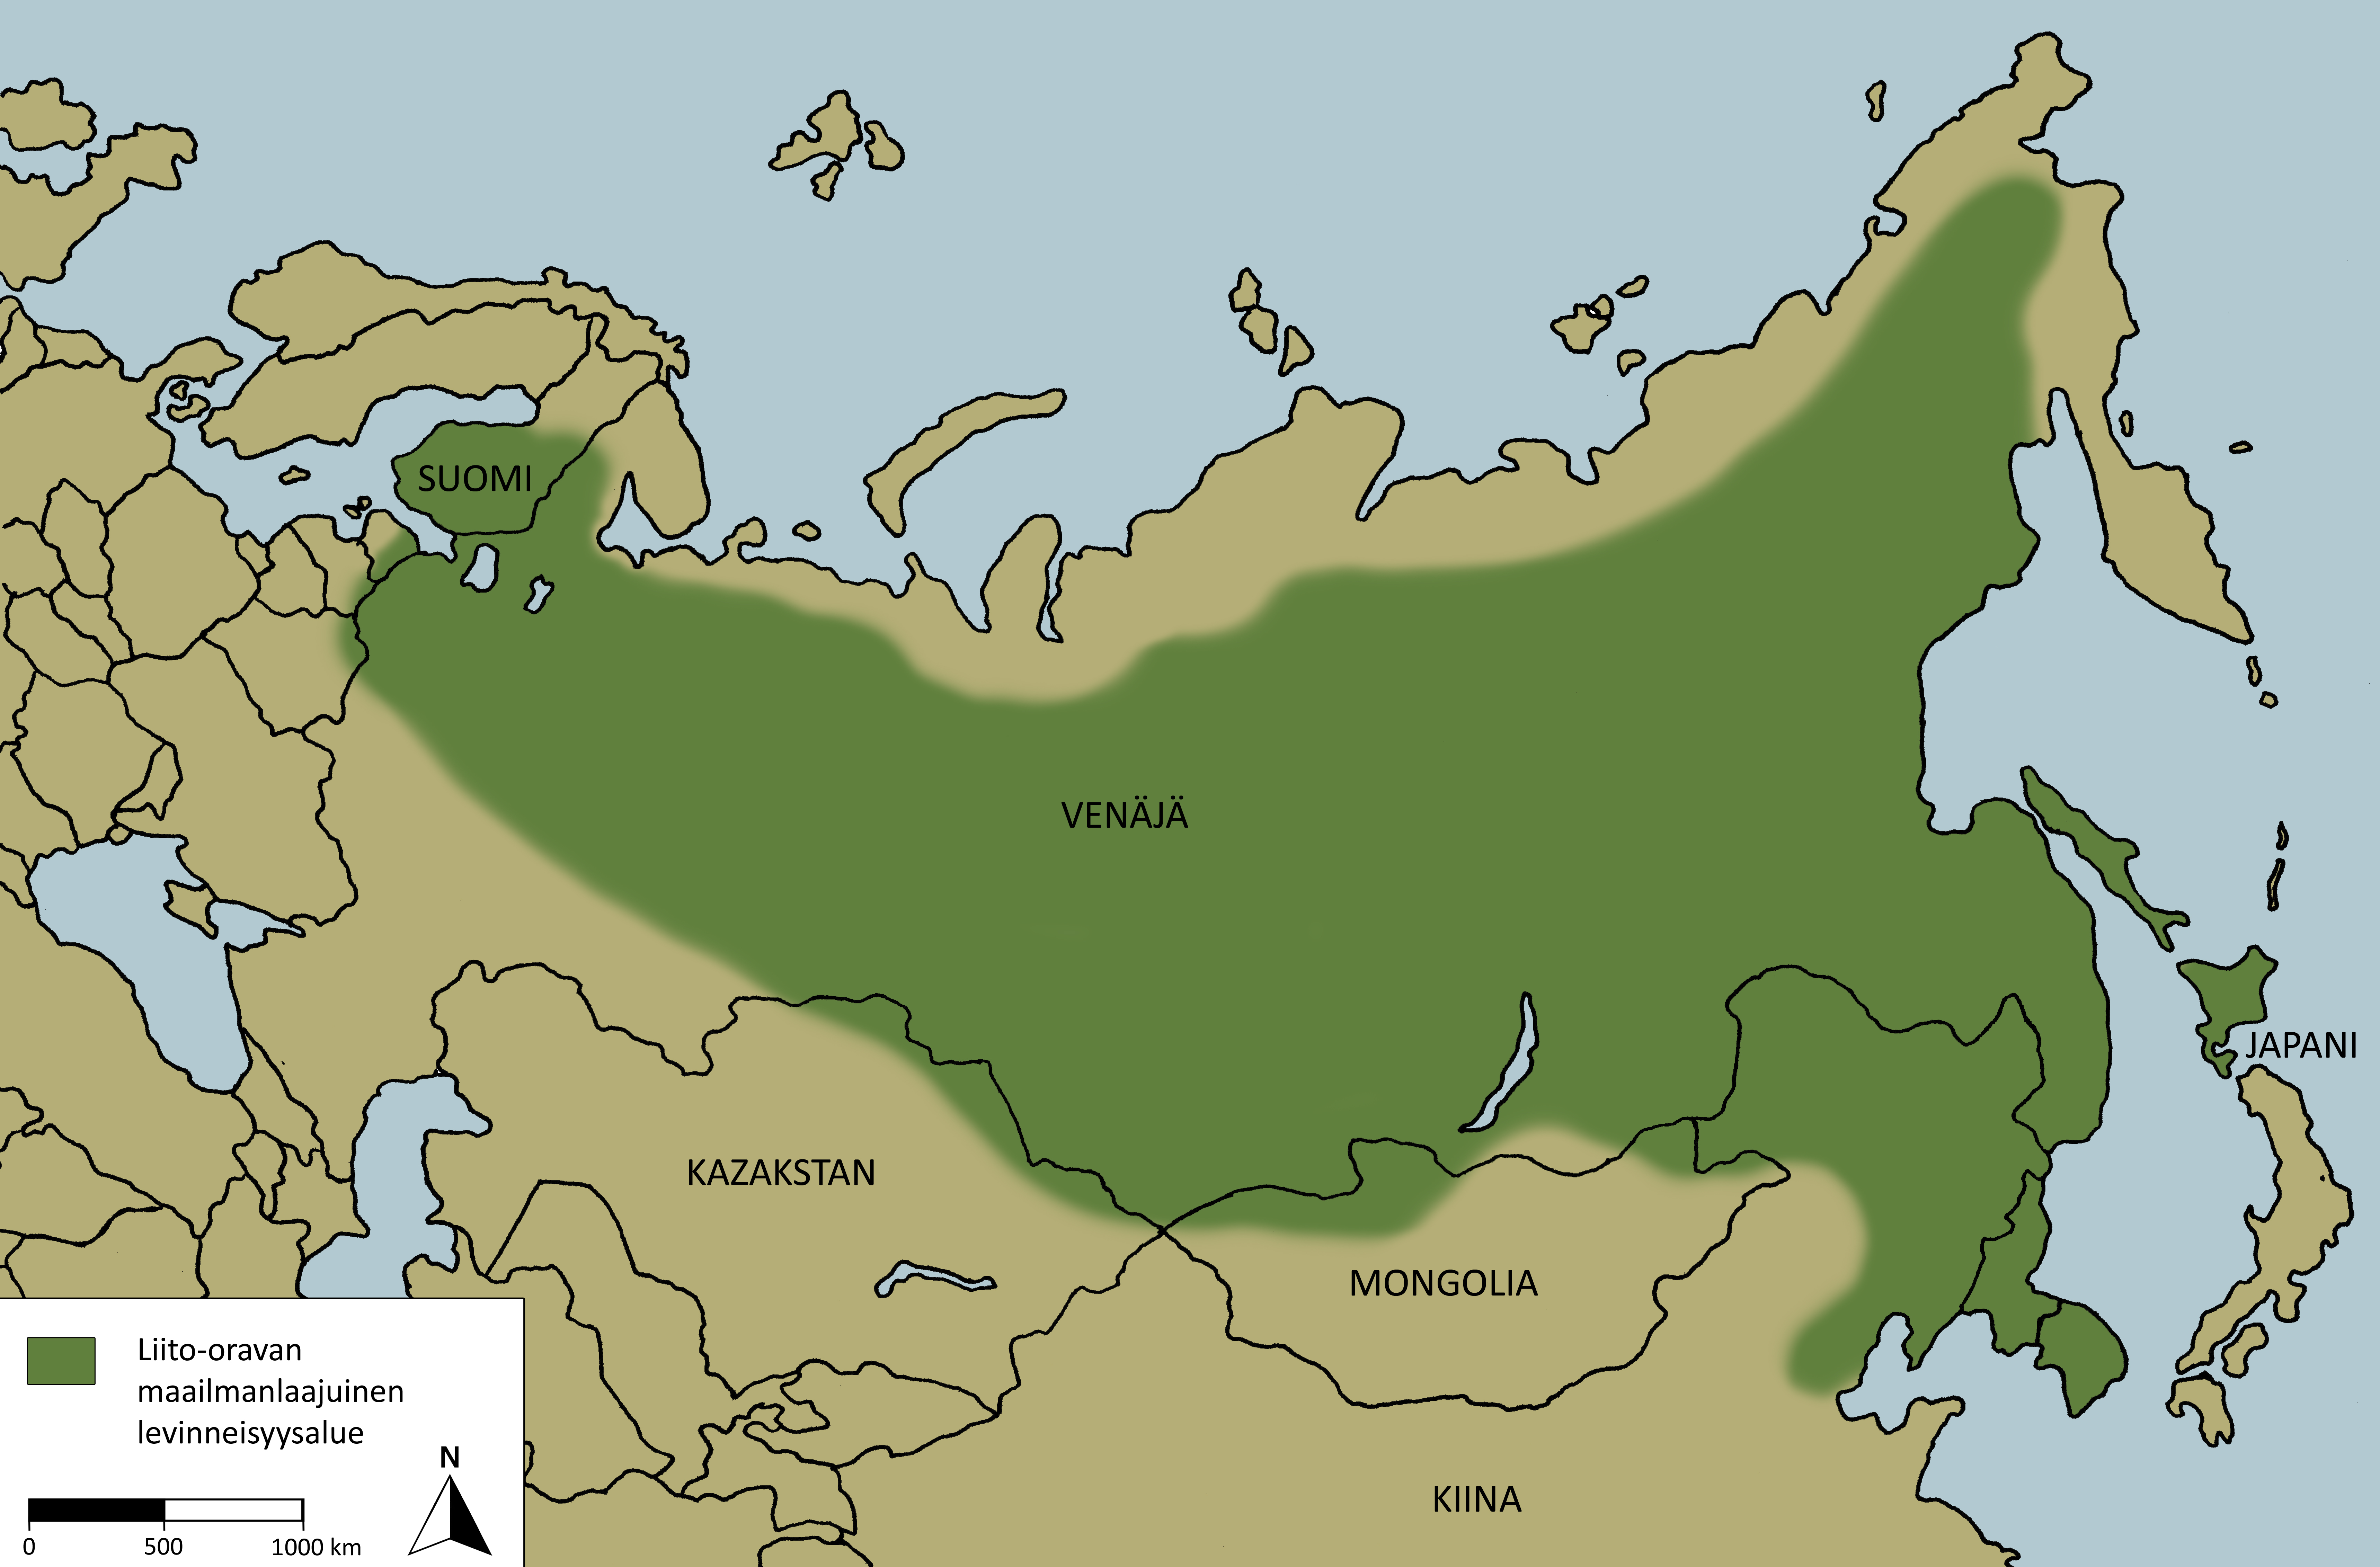 Kartassa on esitetty liito-oravan maailmanlaajuinen levinneisyys. Liito-oravaa esiintyy Suomesta ja Virosta Venäjän halki Japaniin asti.